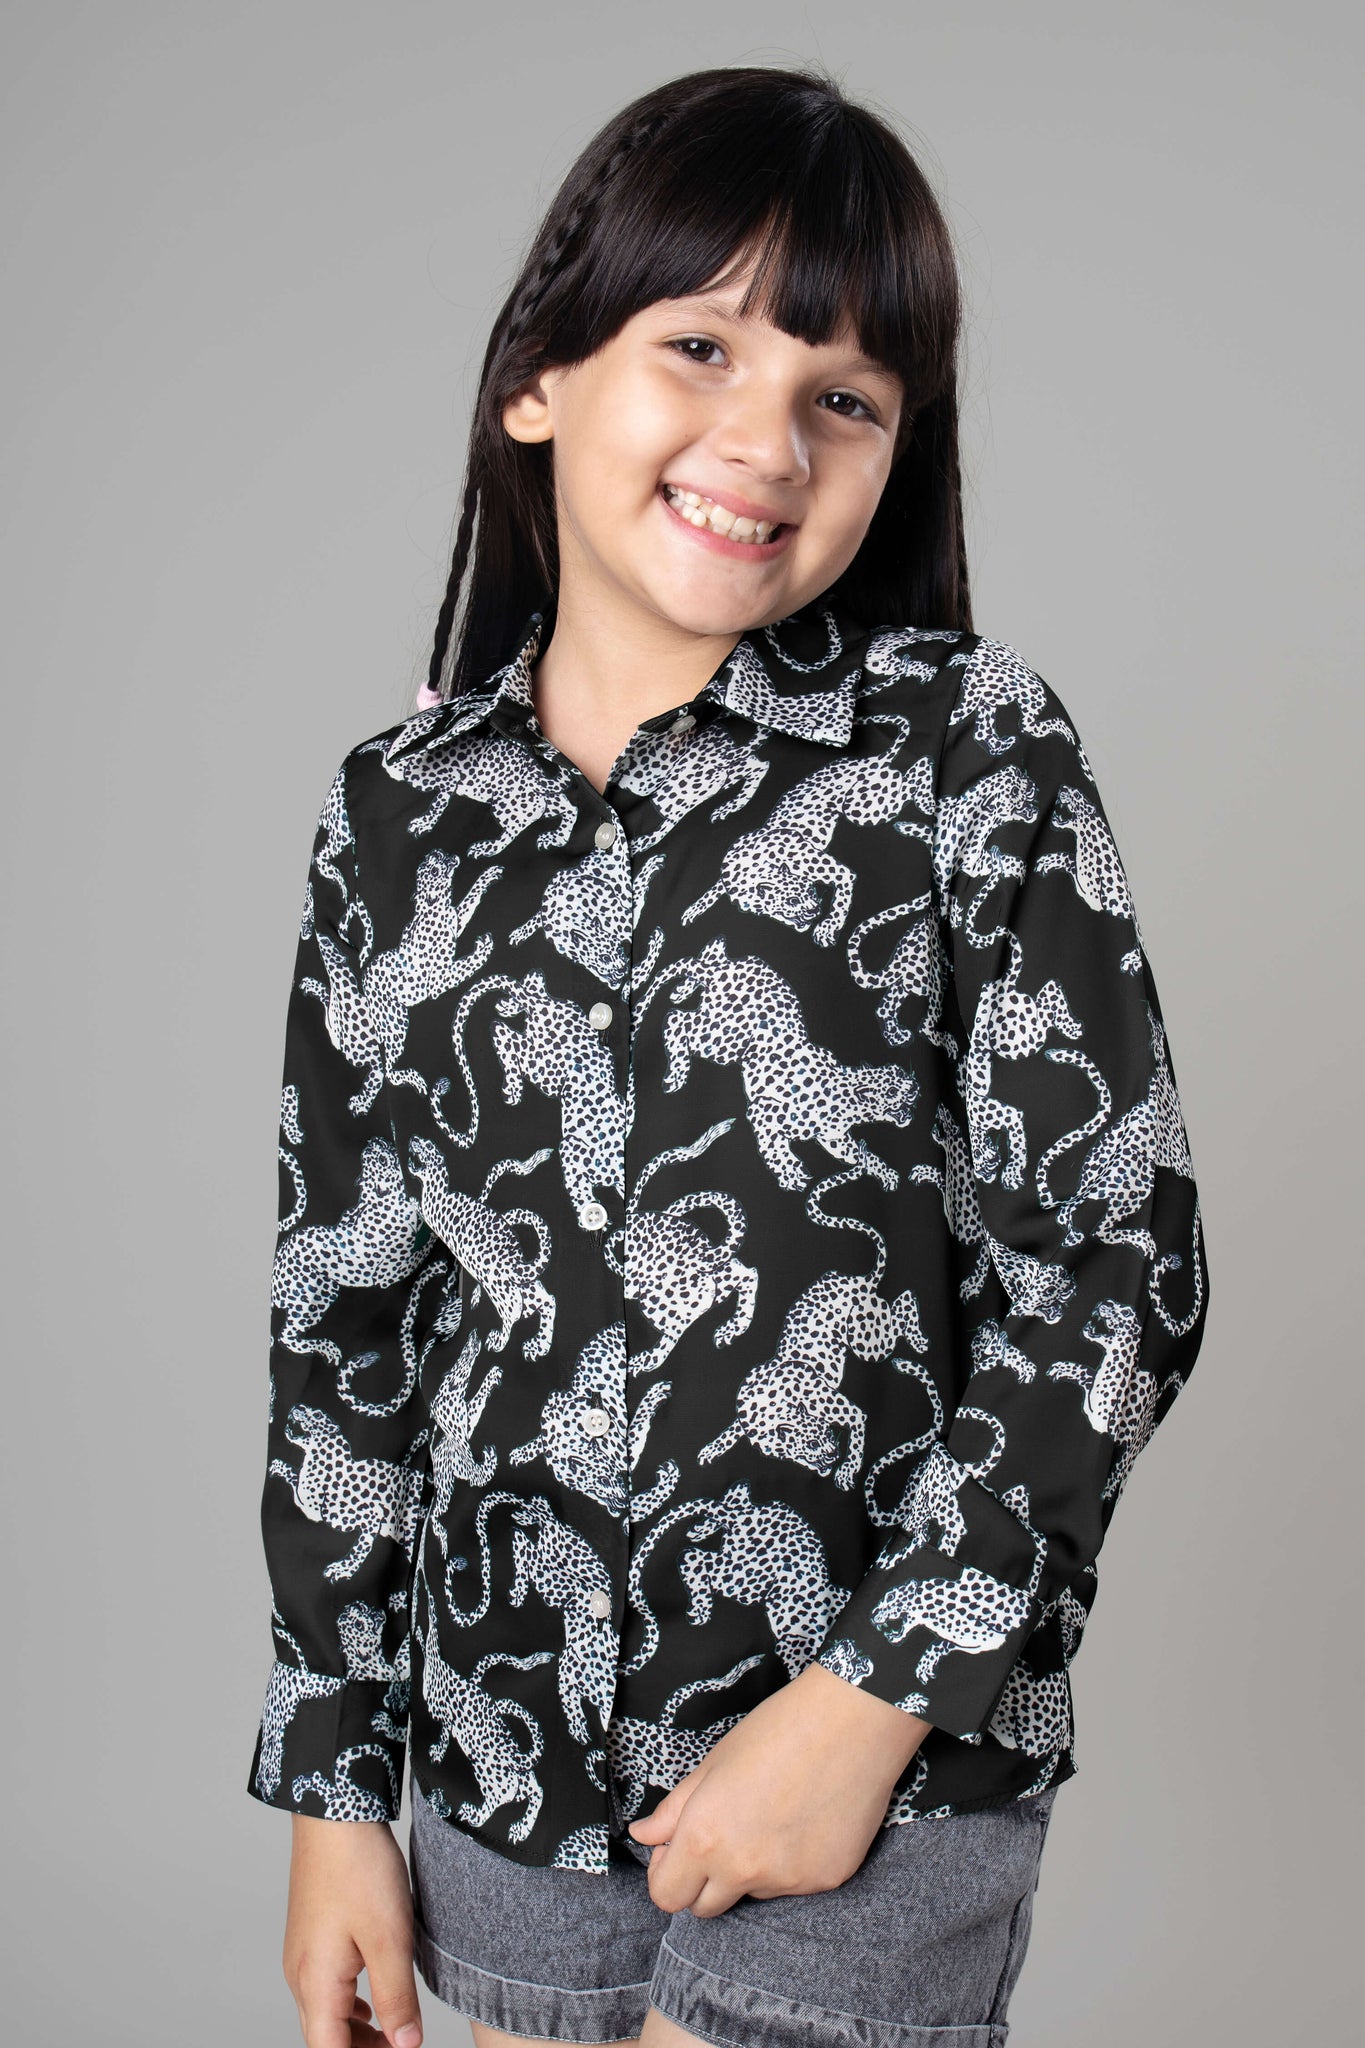 Leopard Print Shirt For Girls